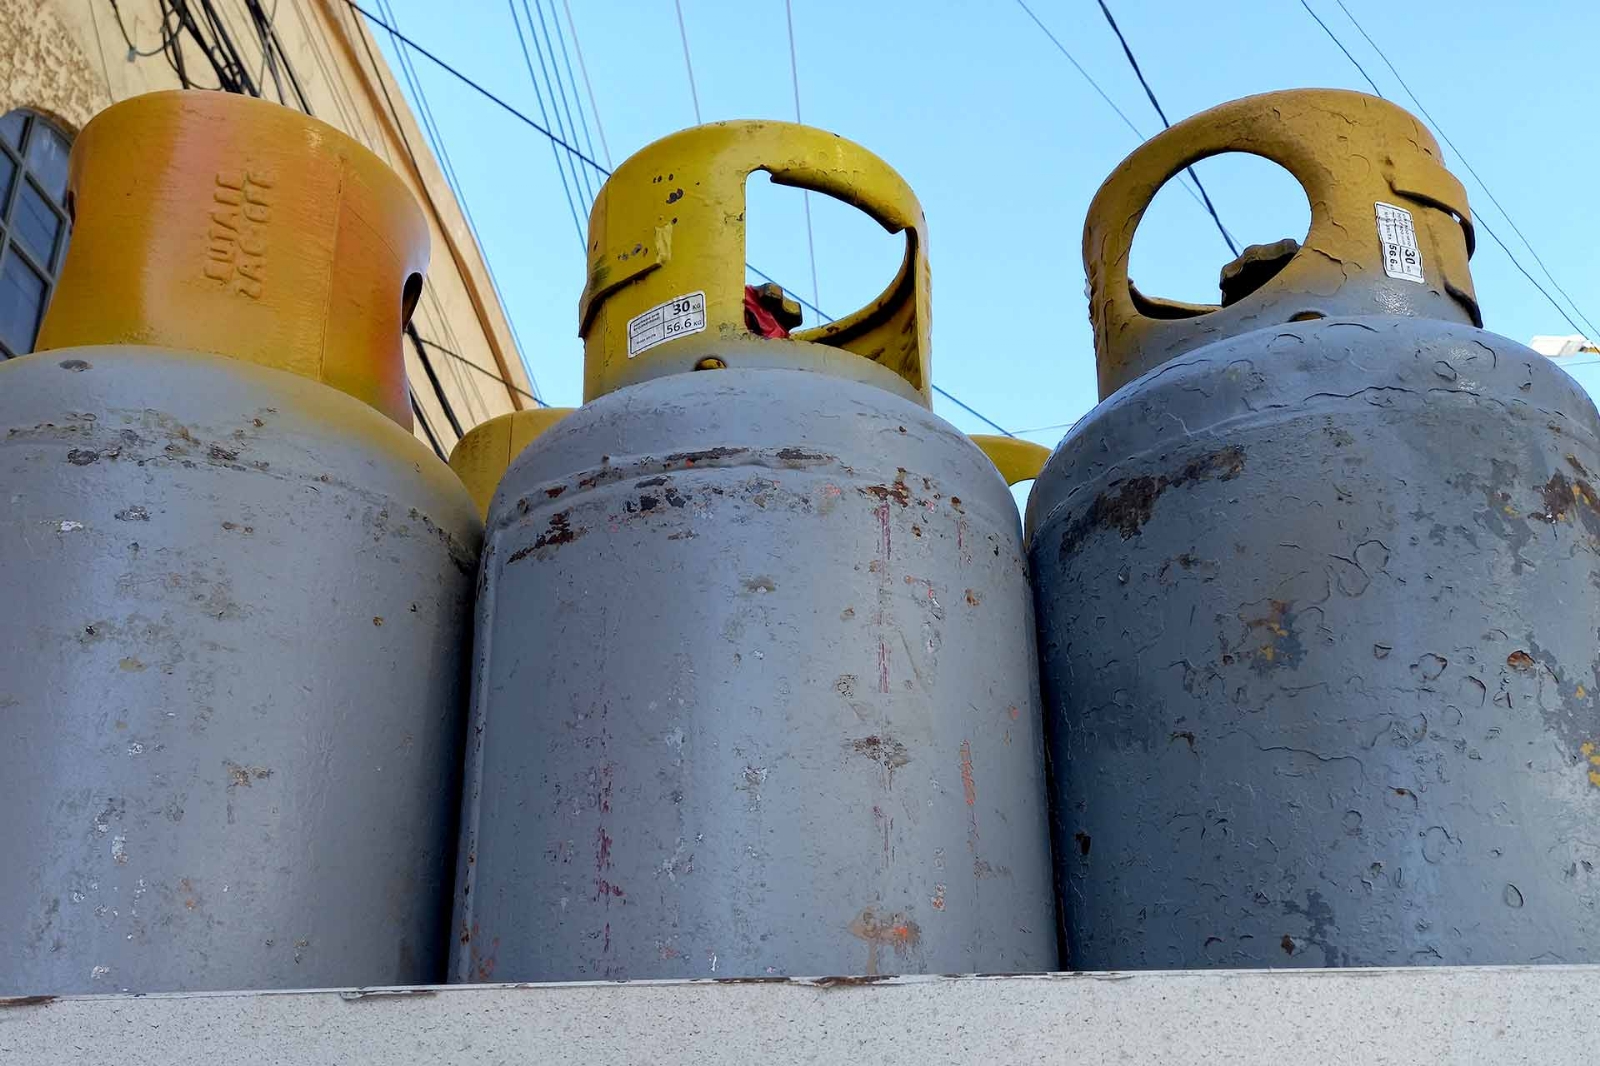 El precio del gas LP en Yucatán disminuyó por centavos